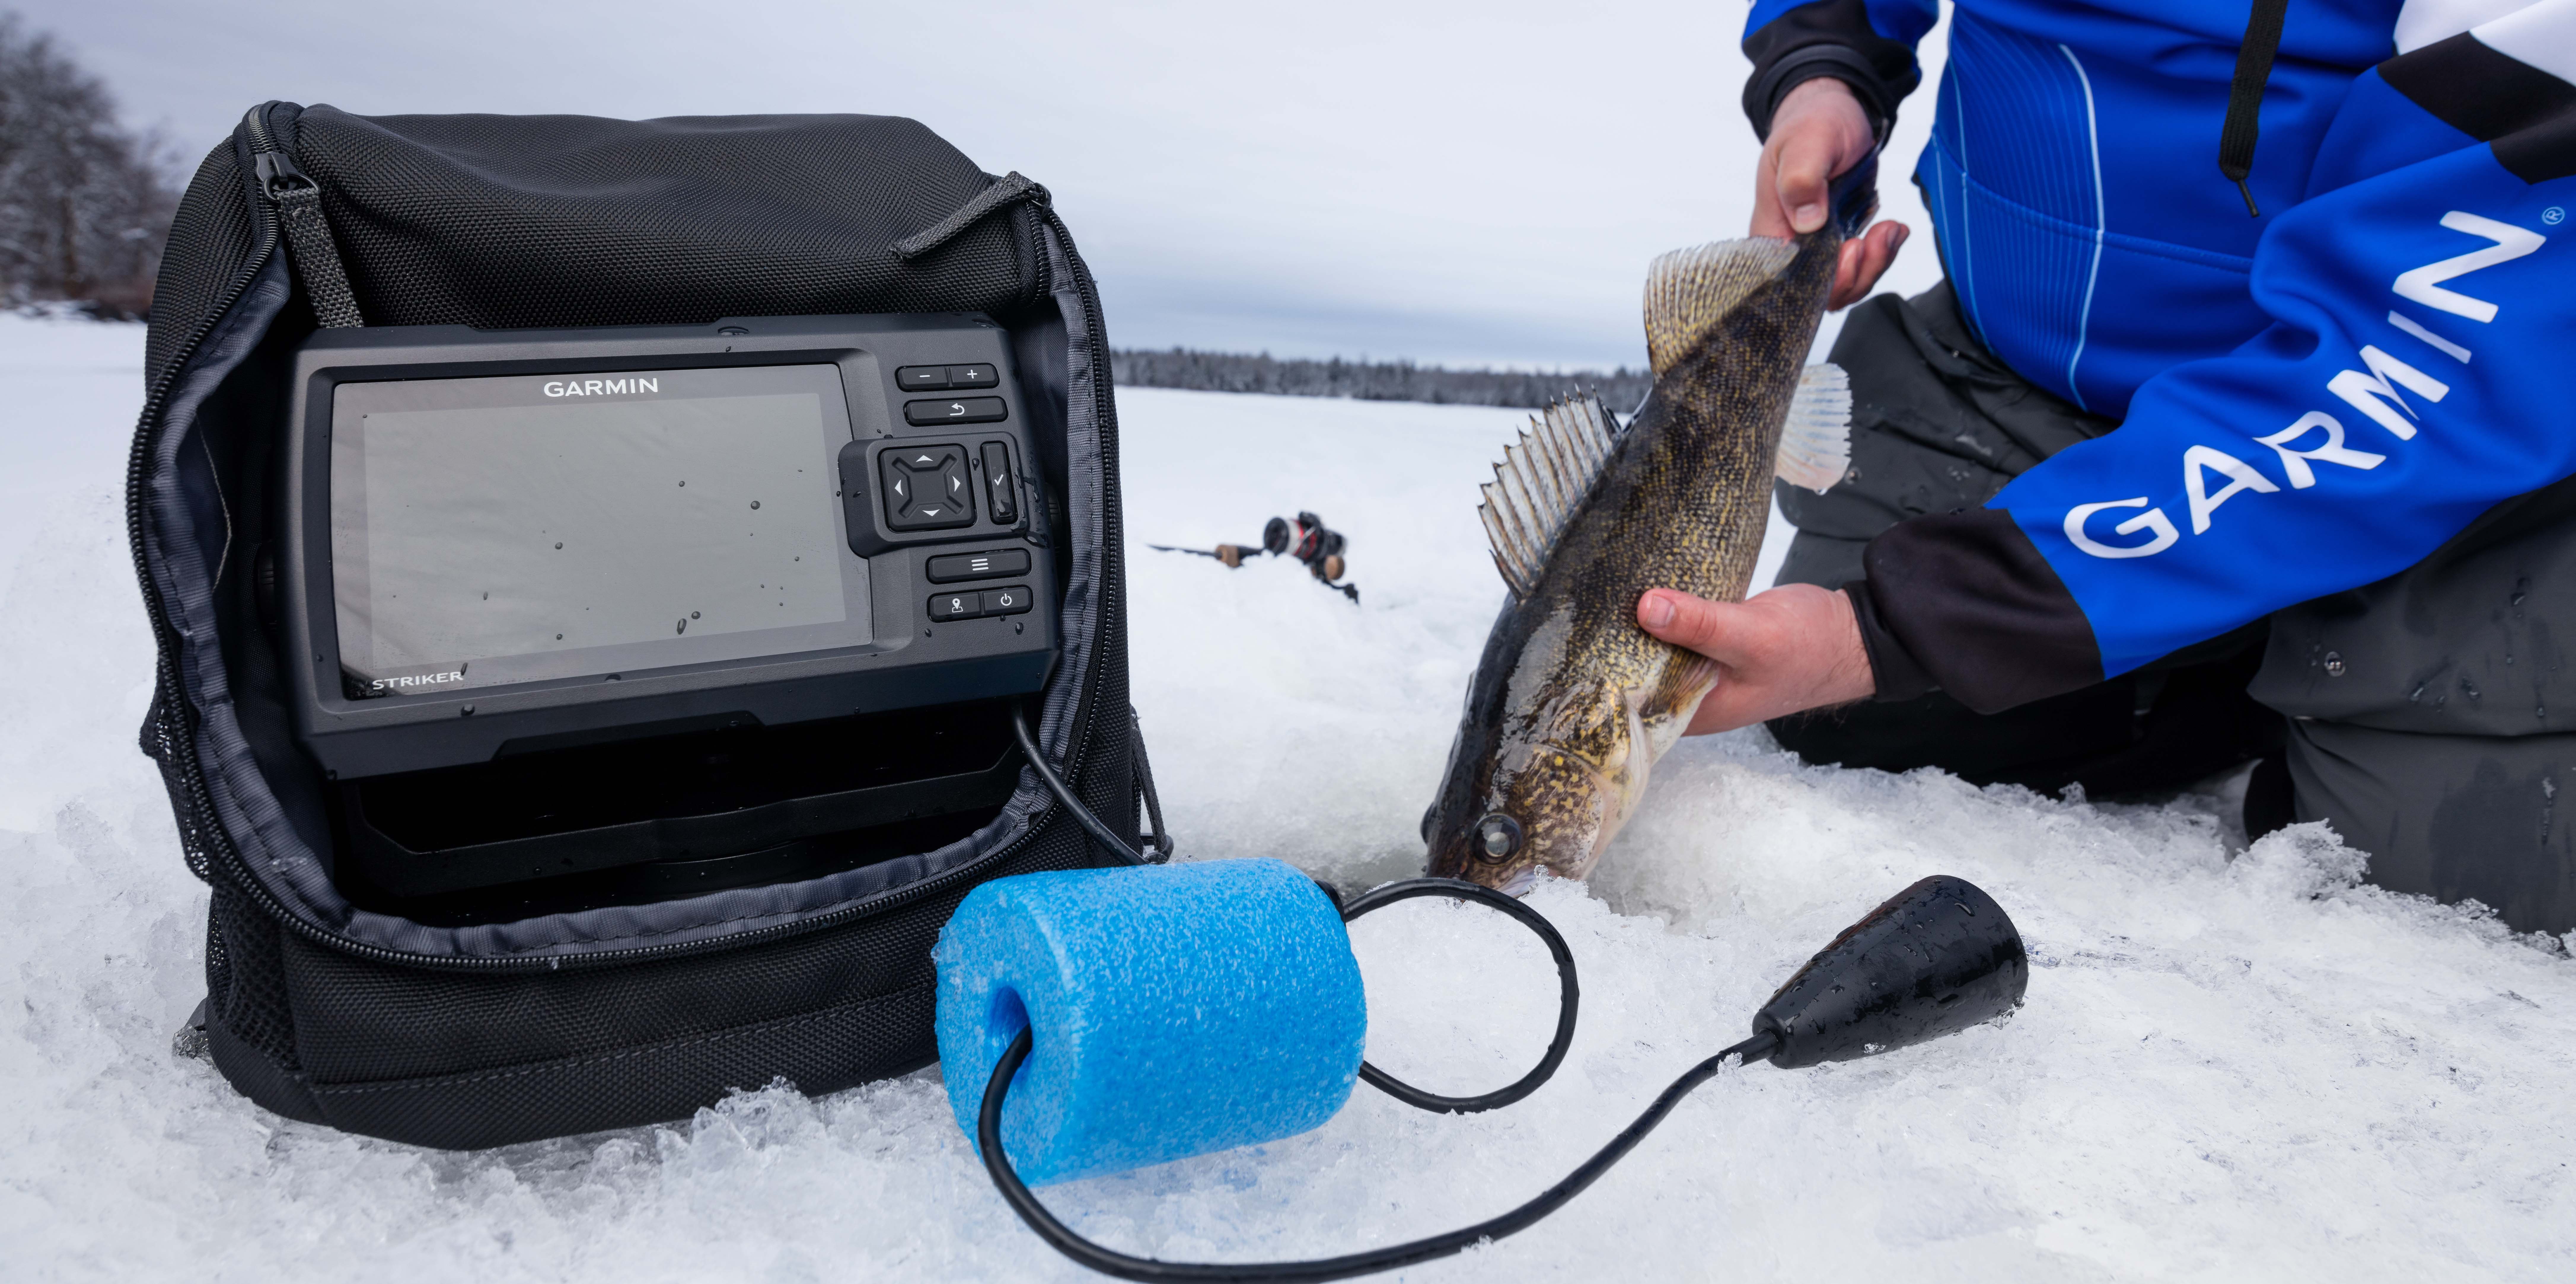 10 лучших эхолотов для зимней рыбалки – рейтинг 2021